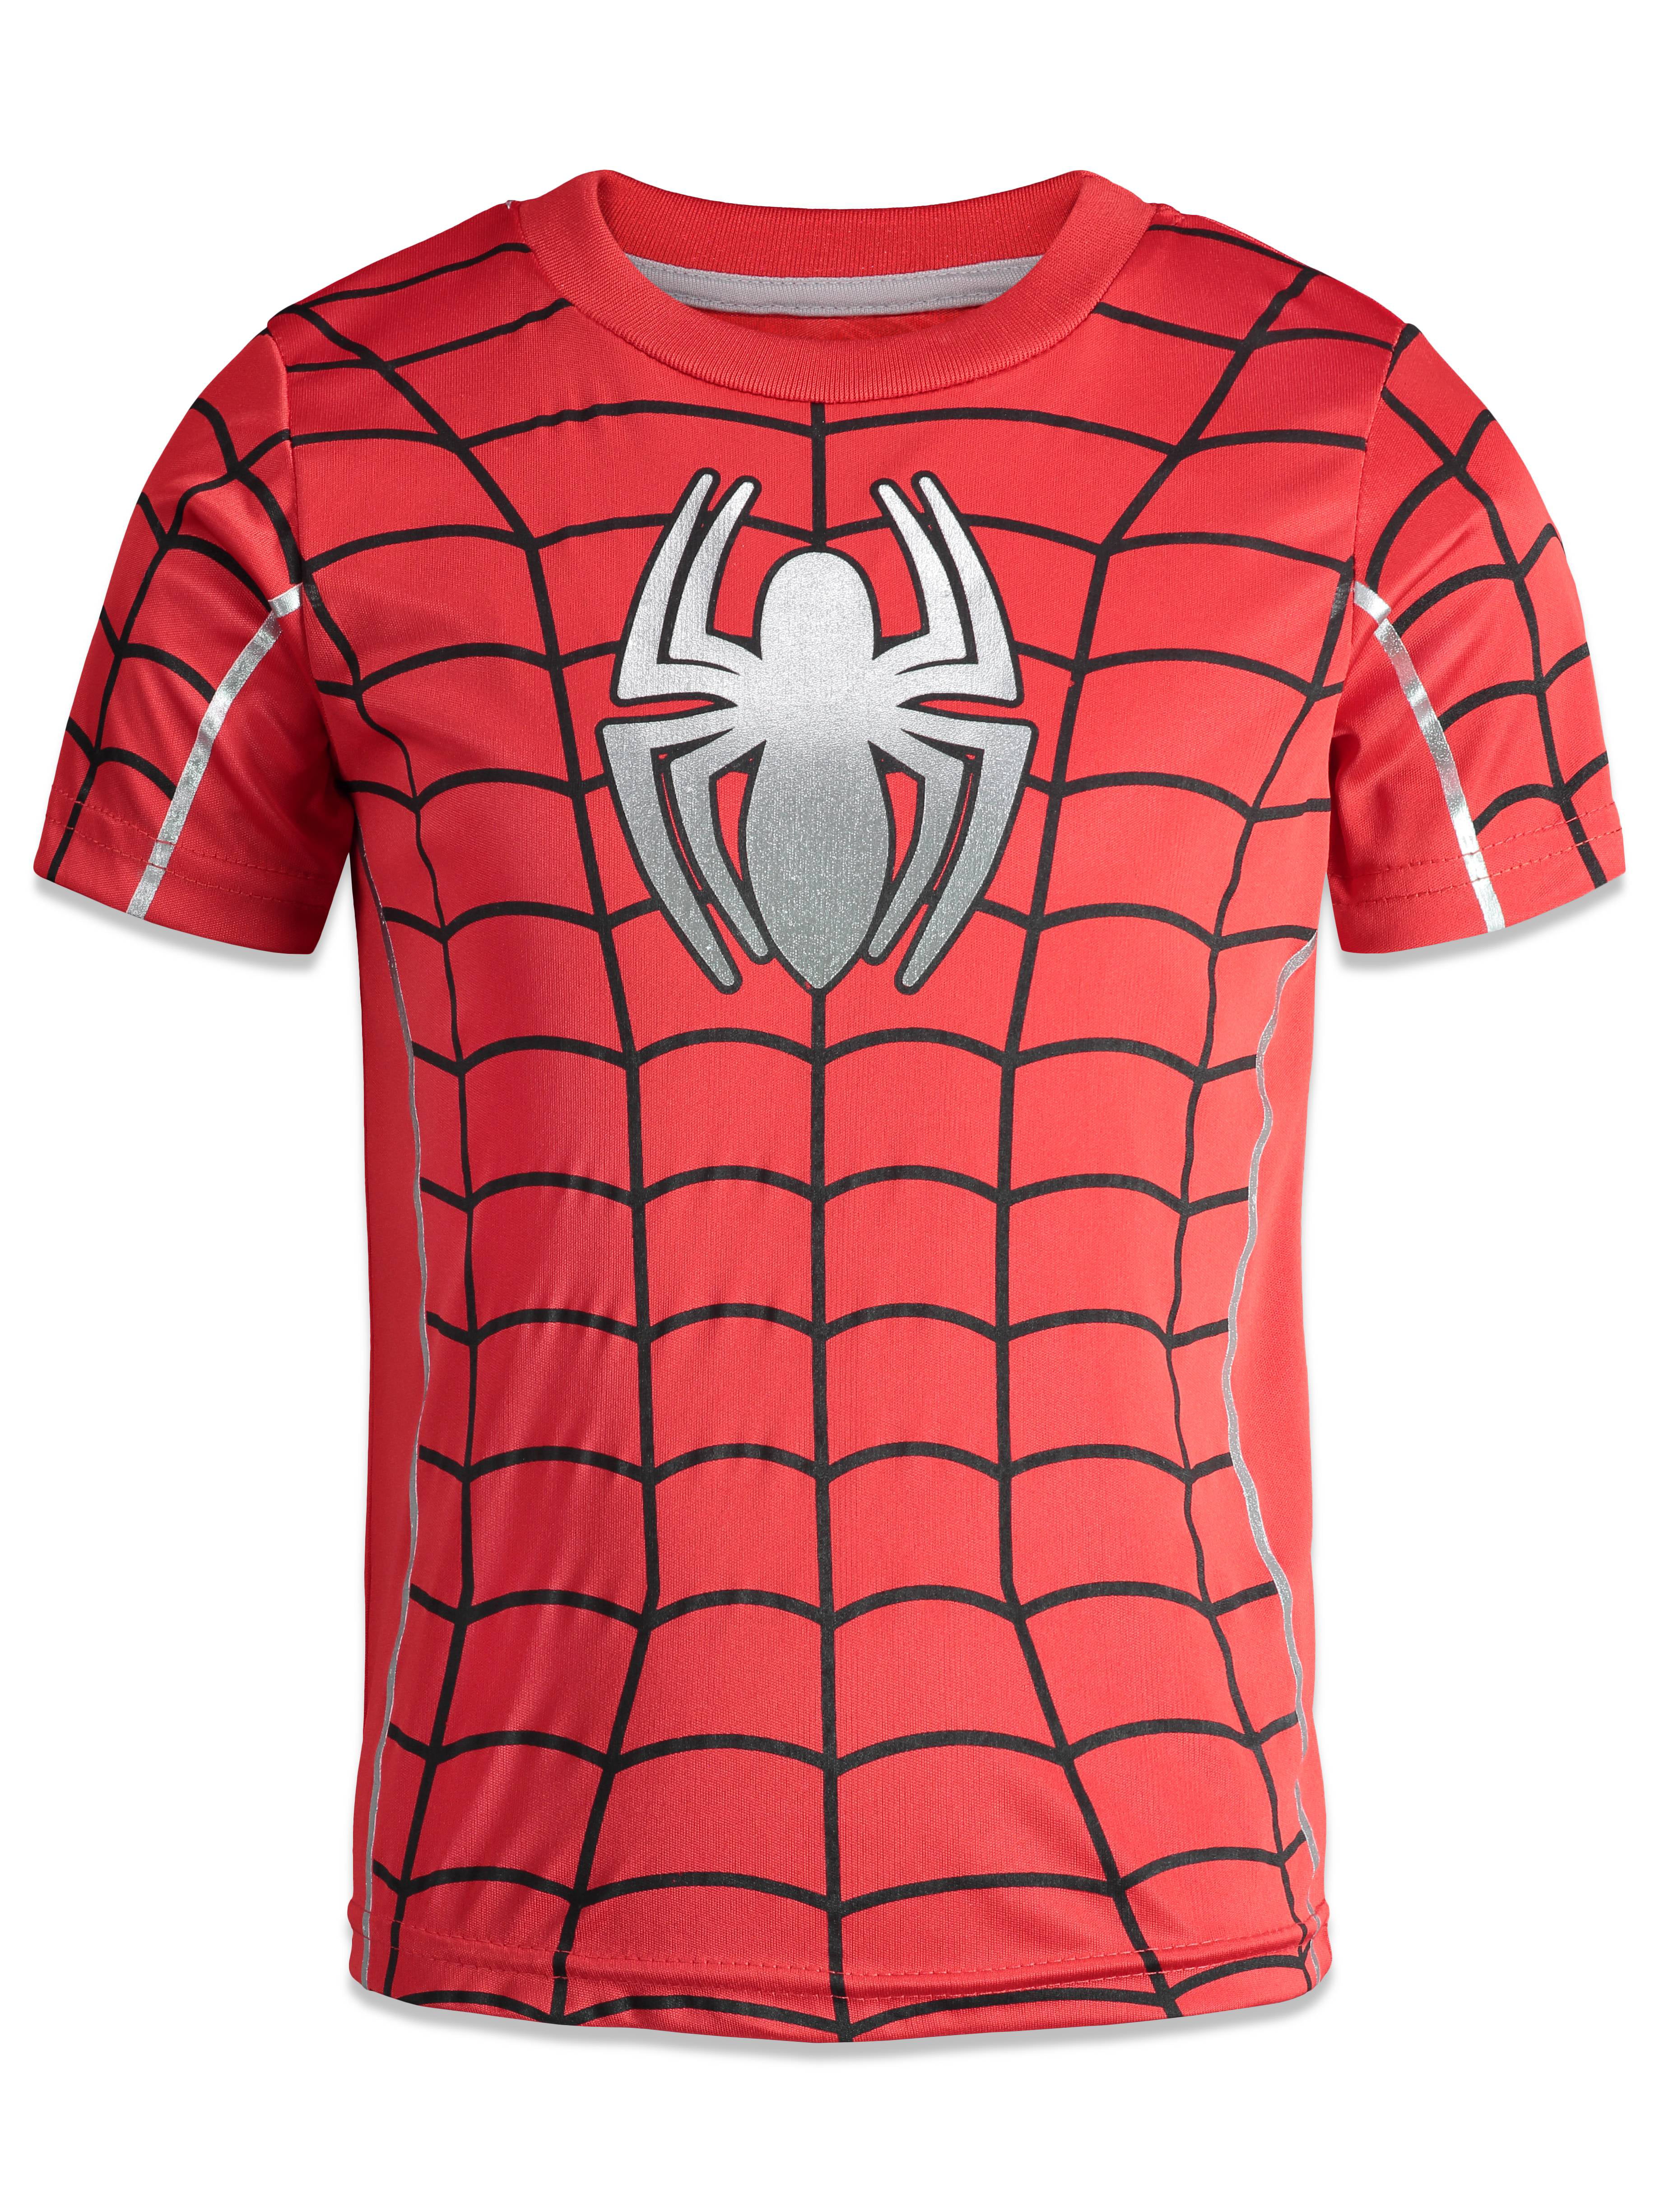 Marvel Avengers Spiderman Athletic T-Shirt T-ShirtShorts Set